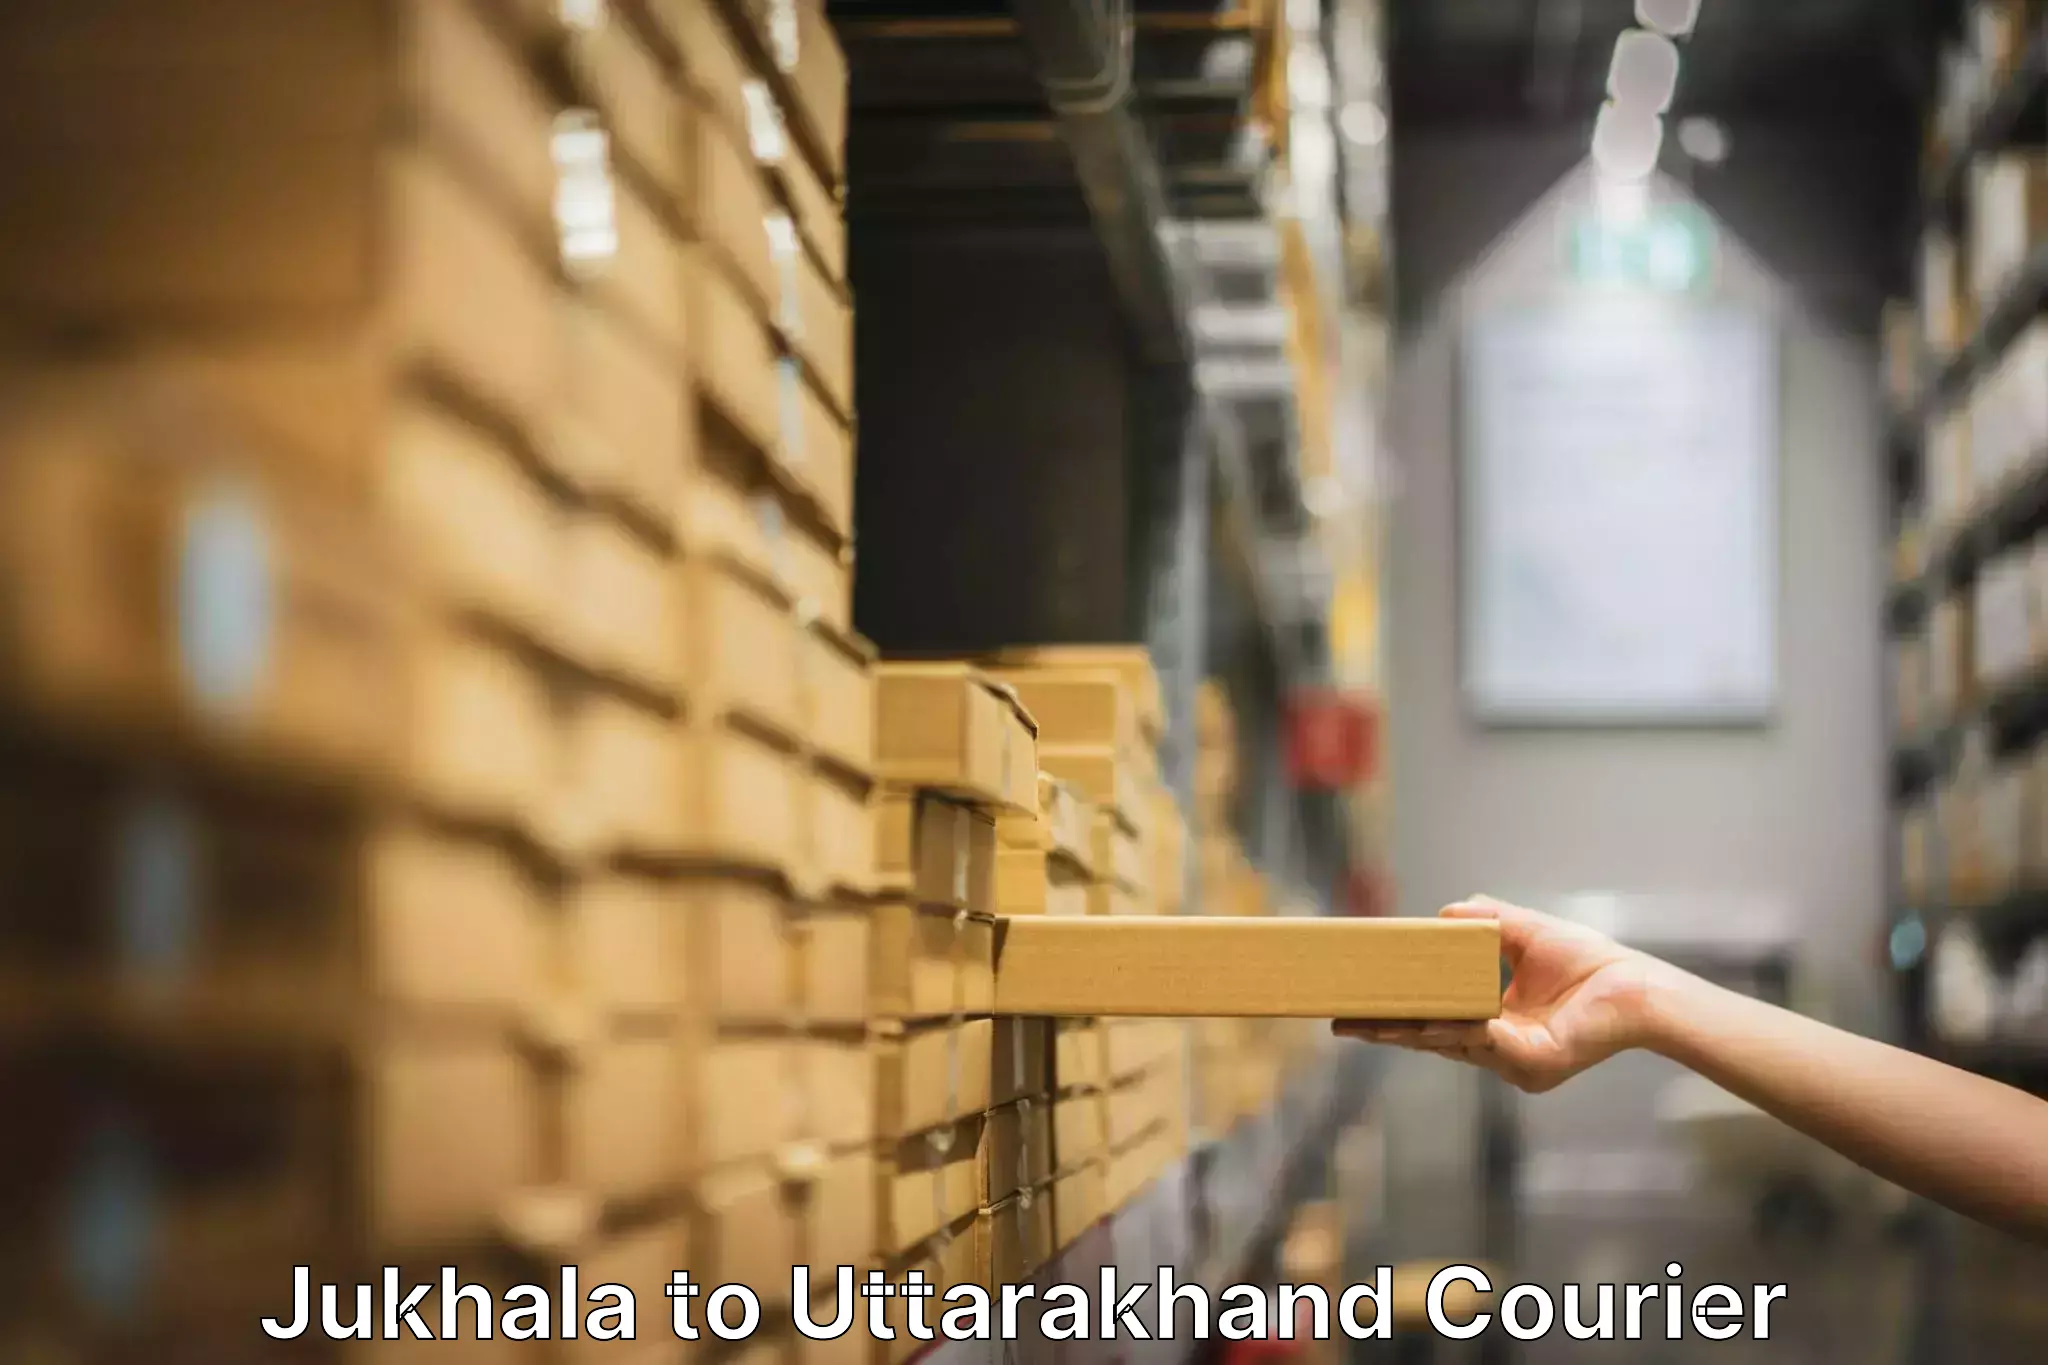 Furniture relocation experts Jukhala to Udham Singh Nagar